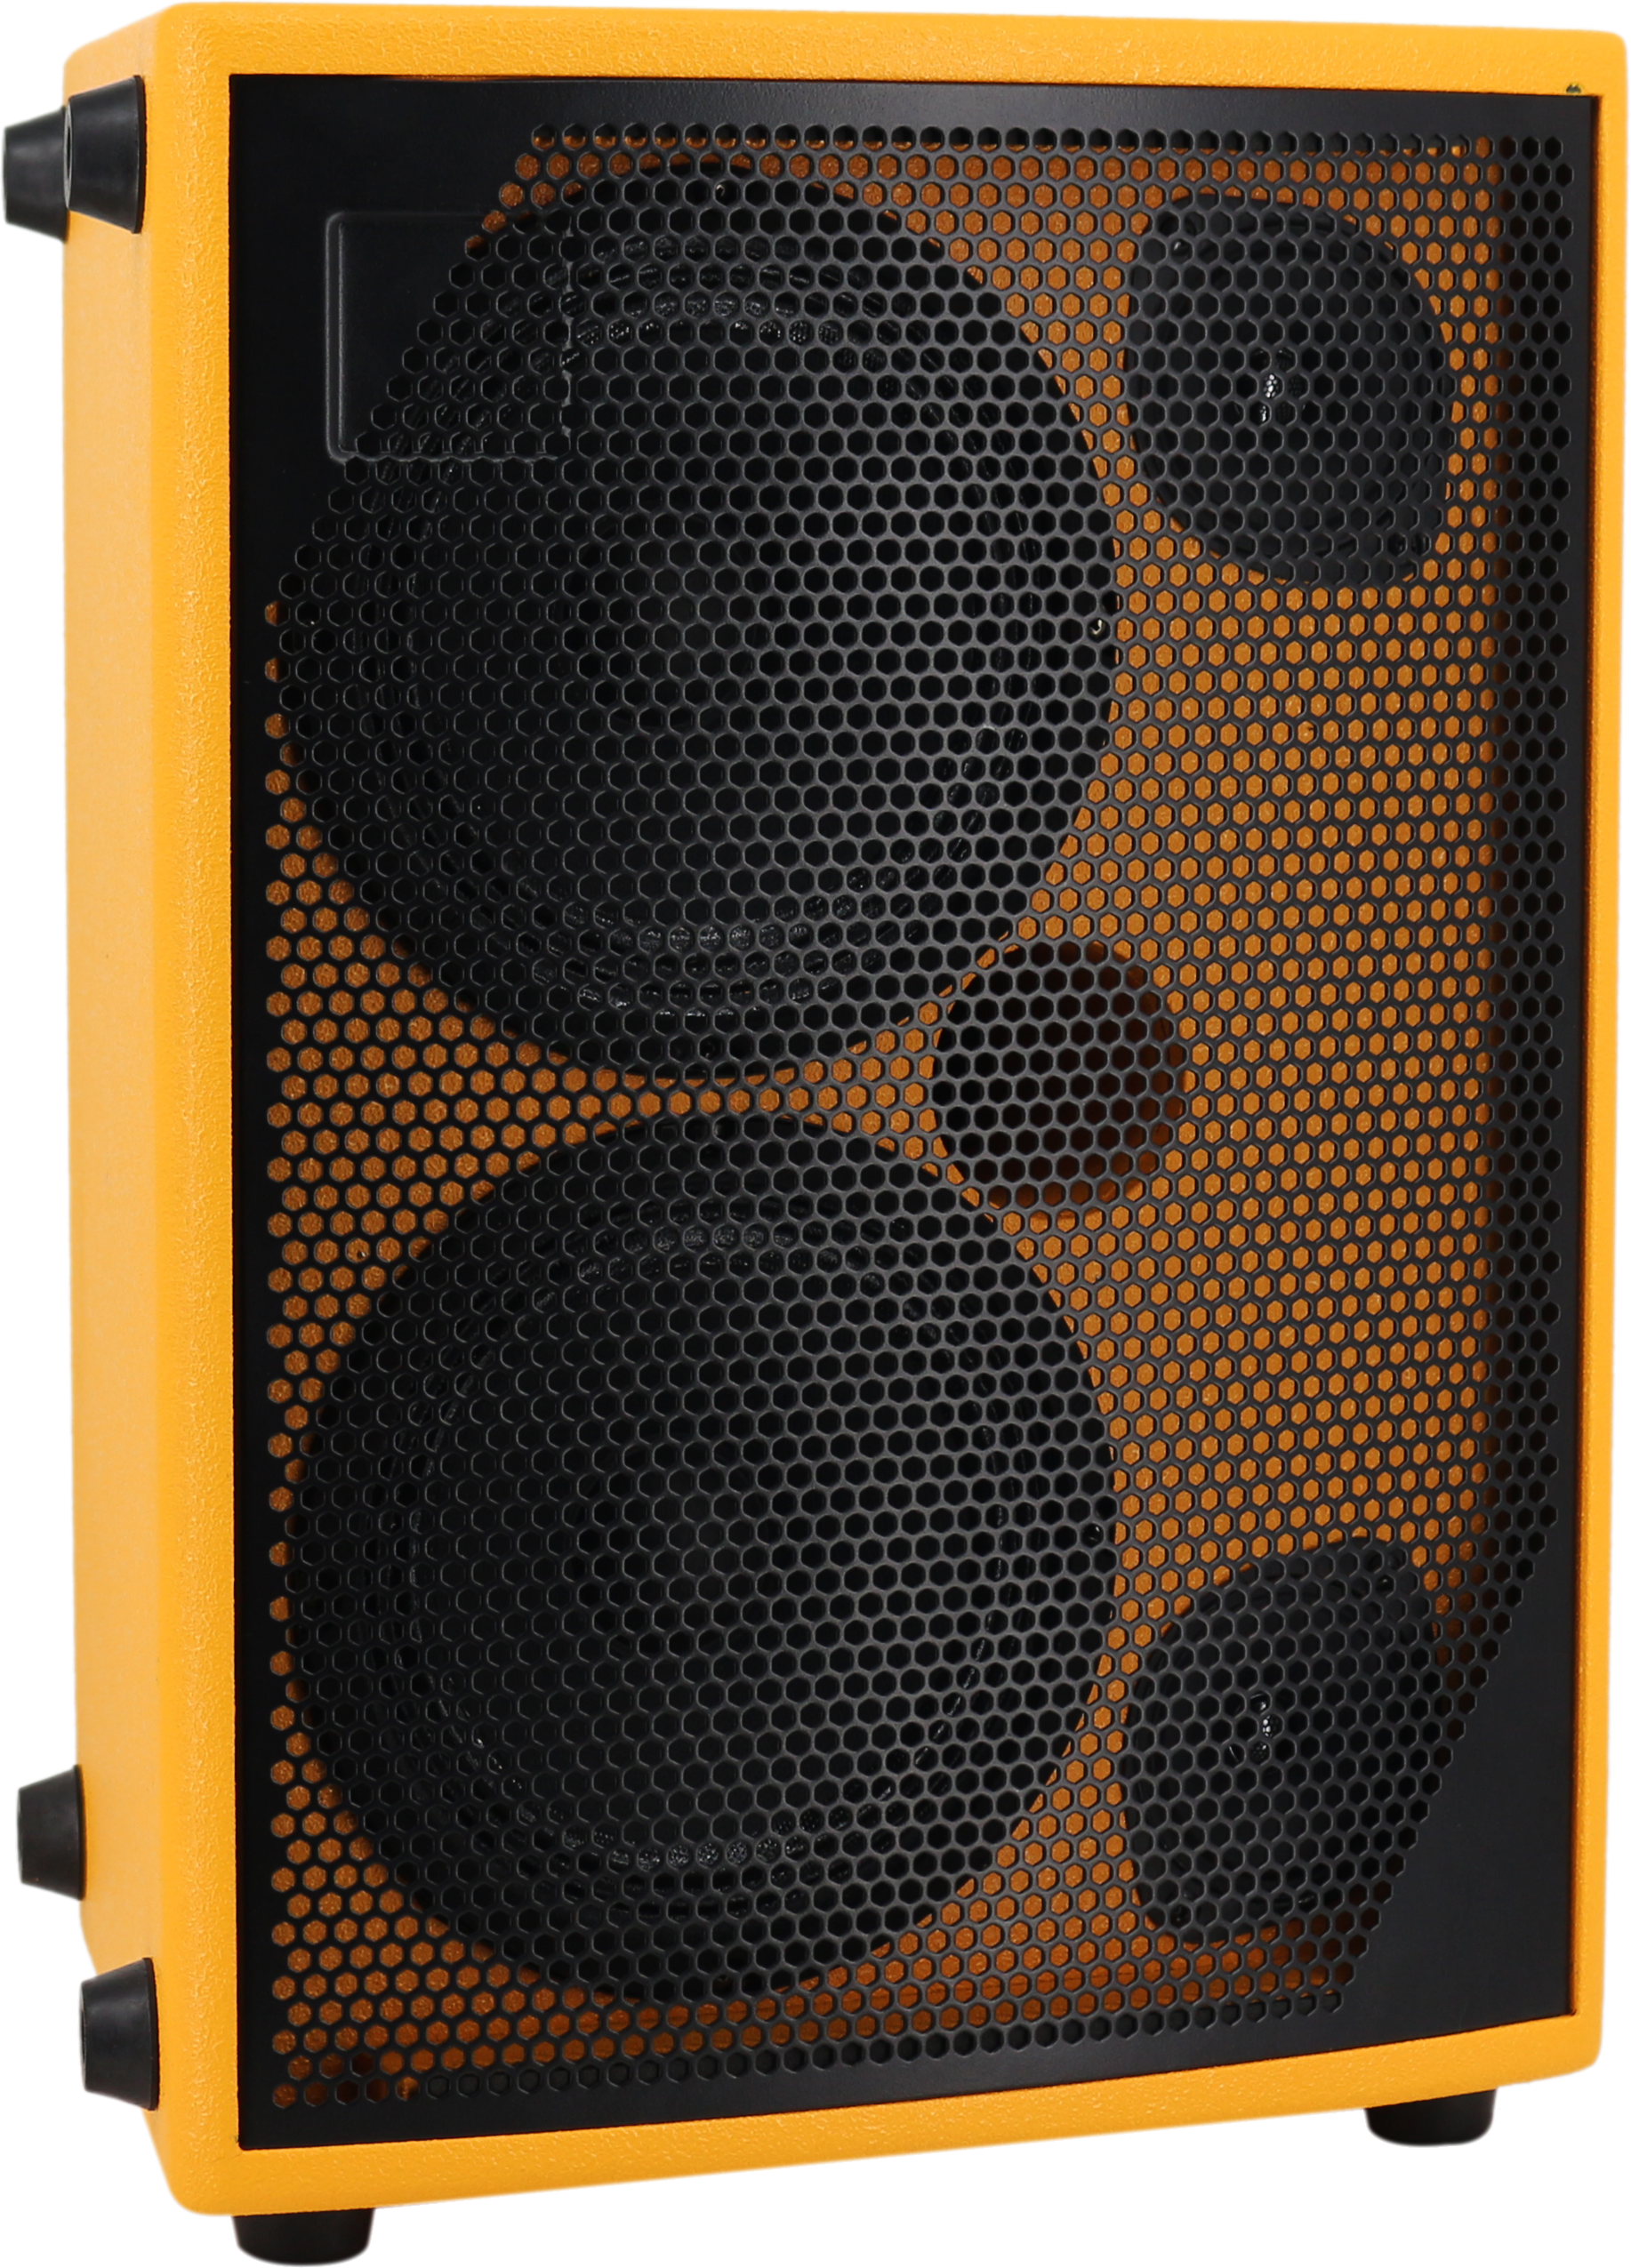 New Speaker Type Bluetooth Guitar Speaker for Instrument